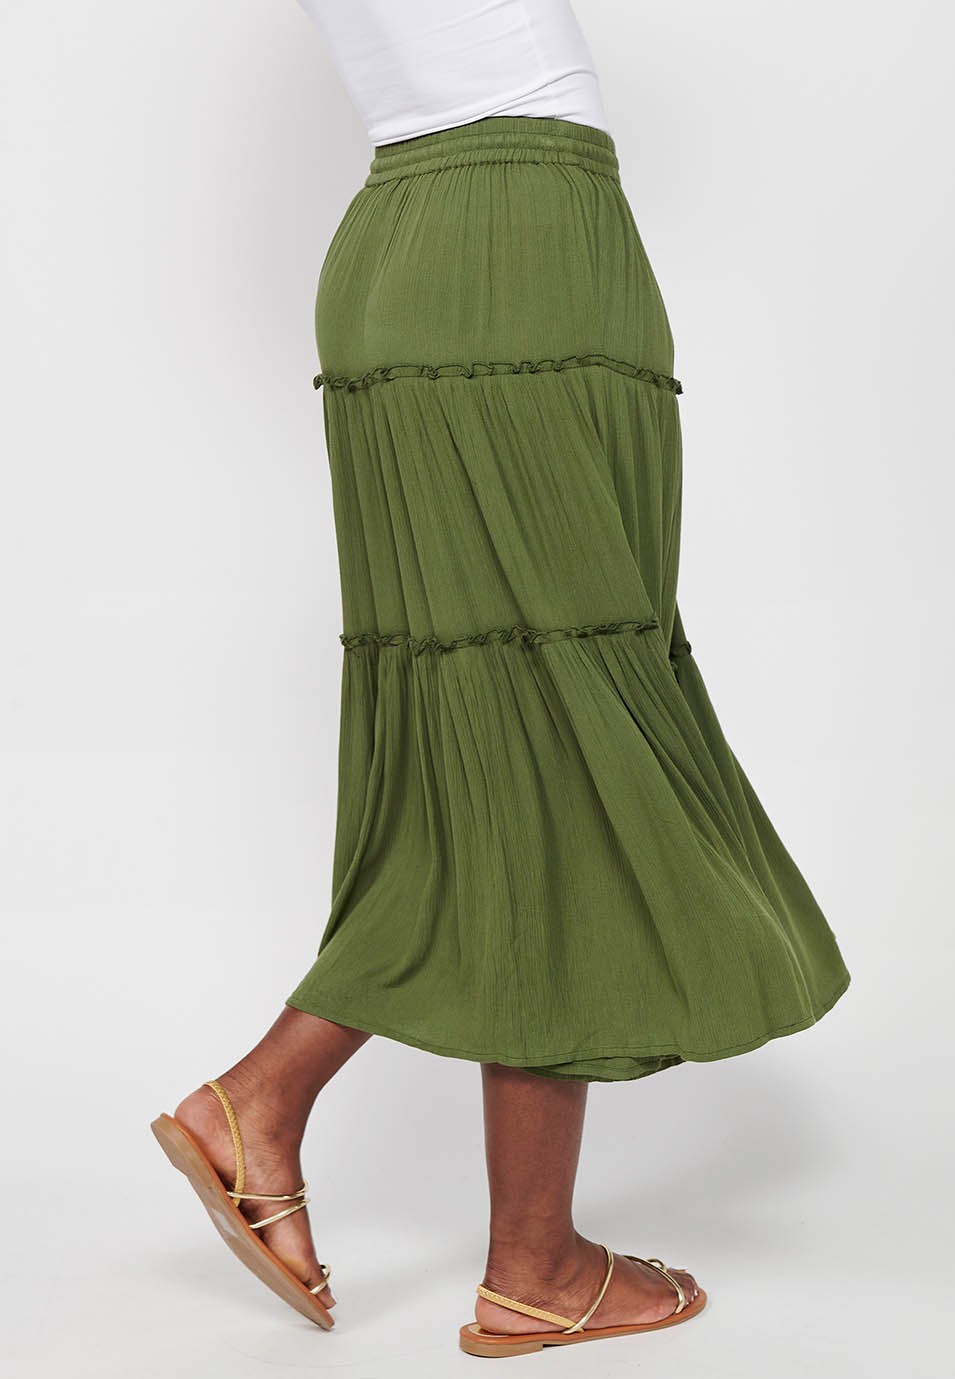 Jupe longue, taille caoutchoutée, couleur verte pour femme